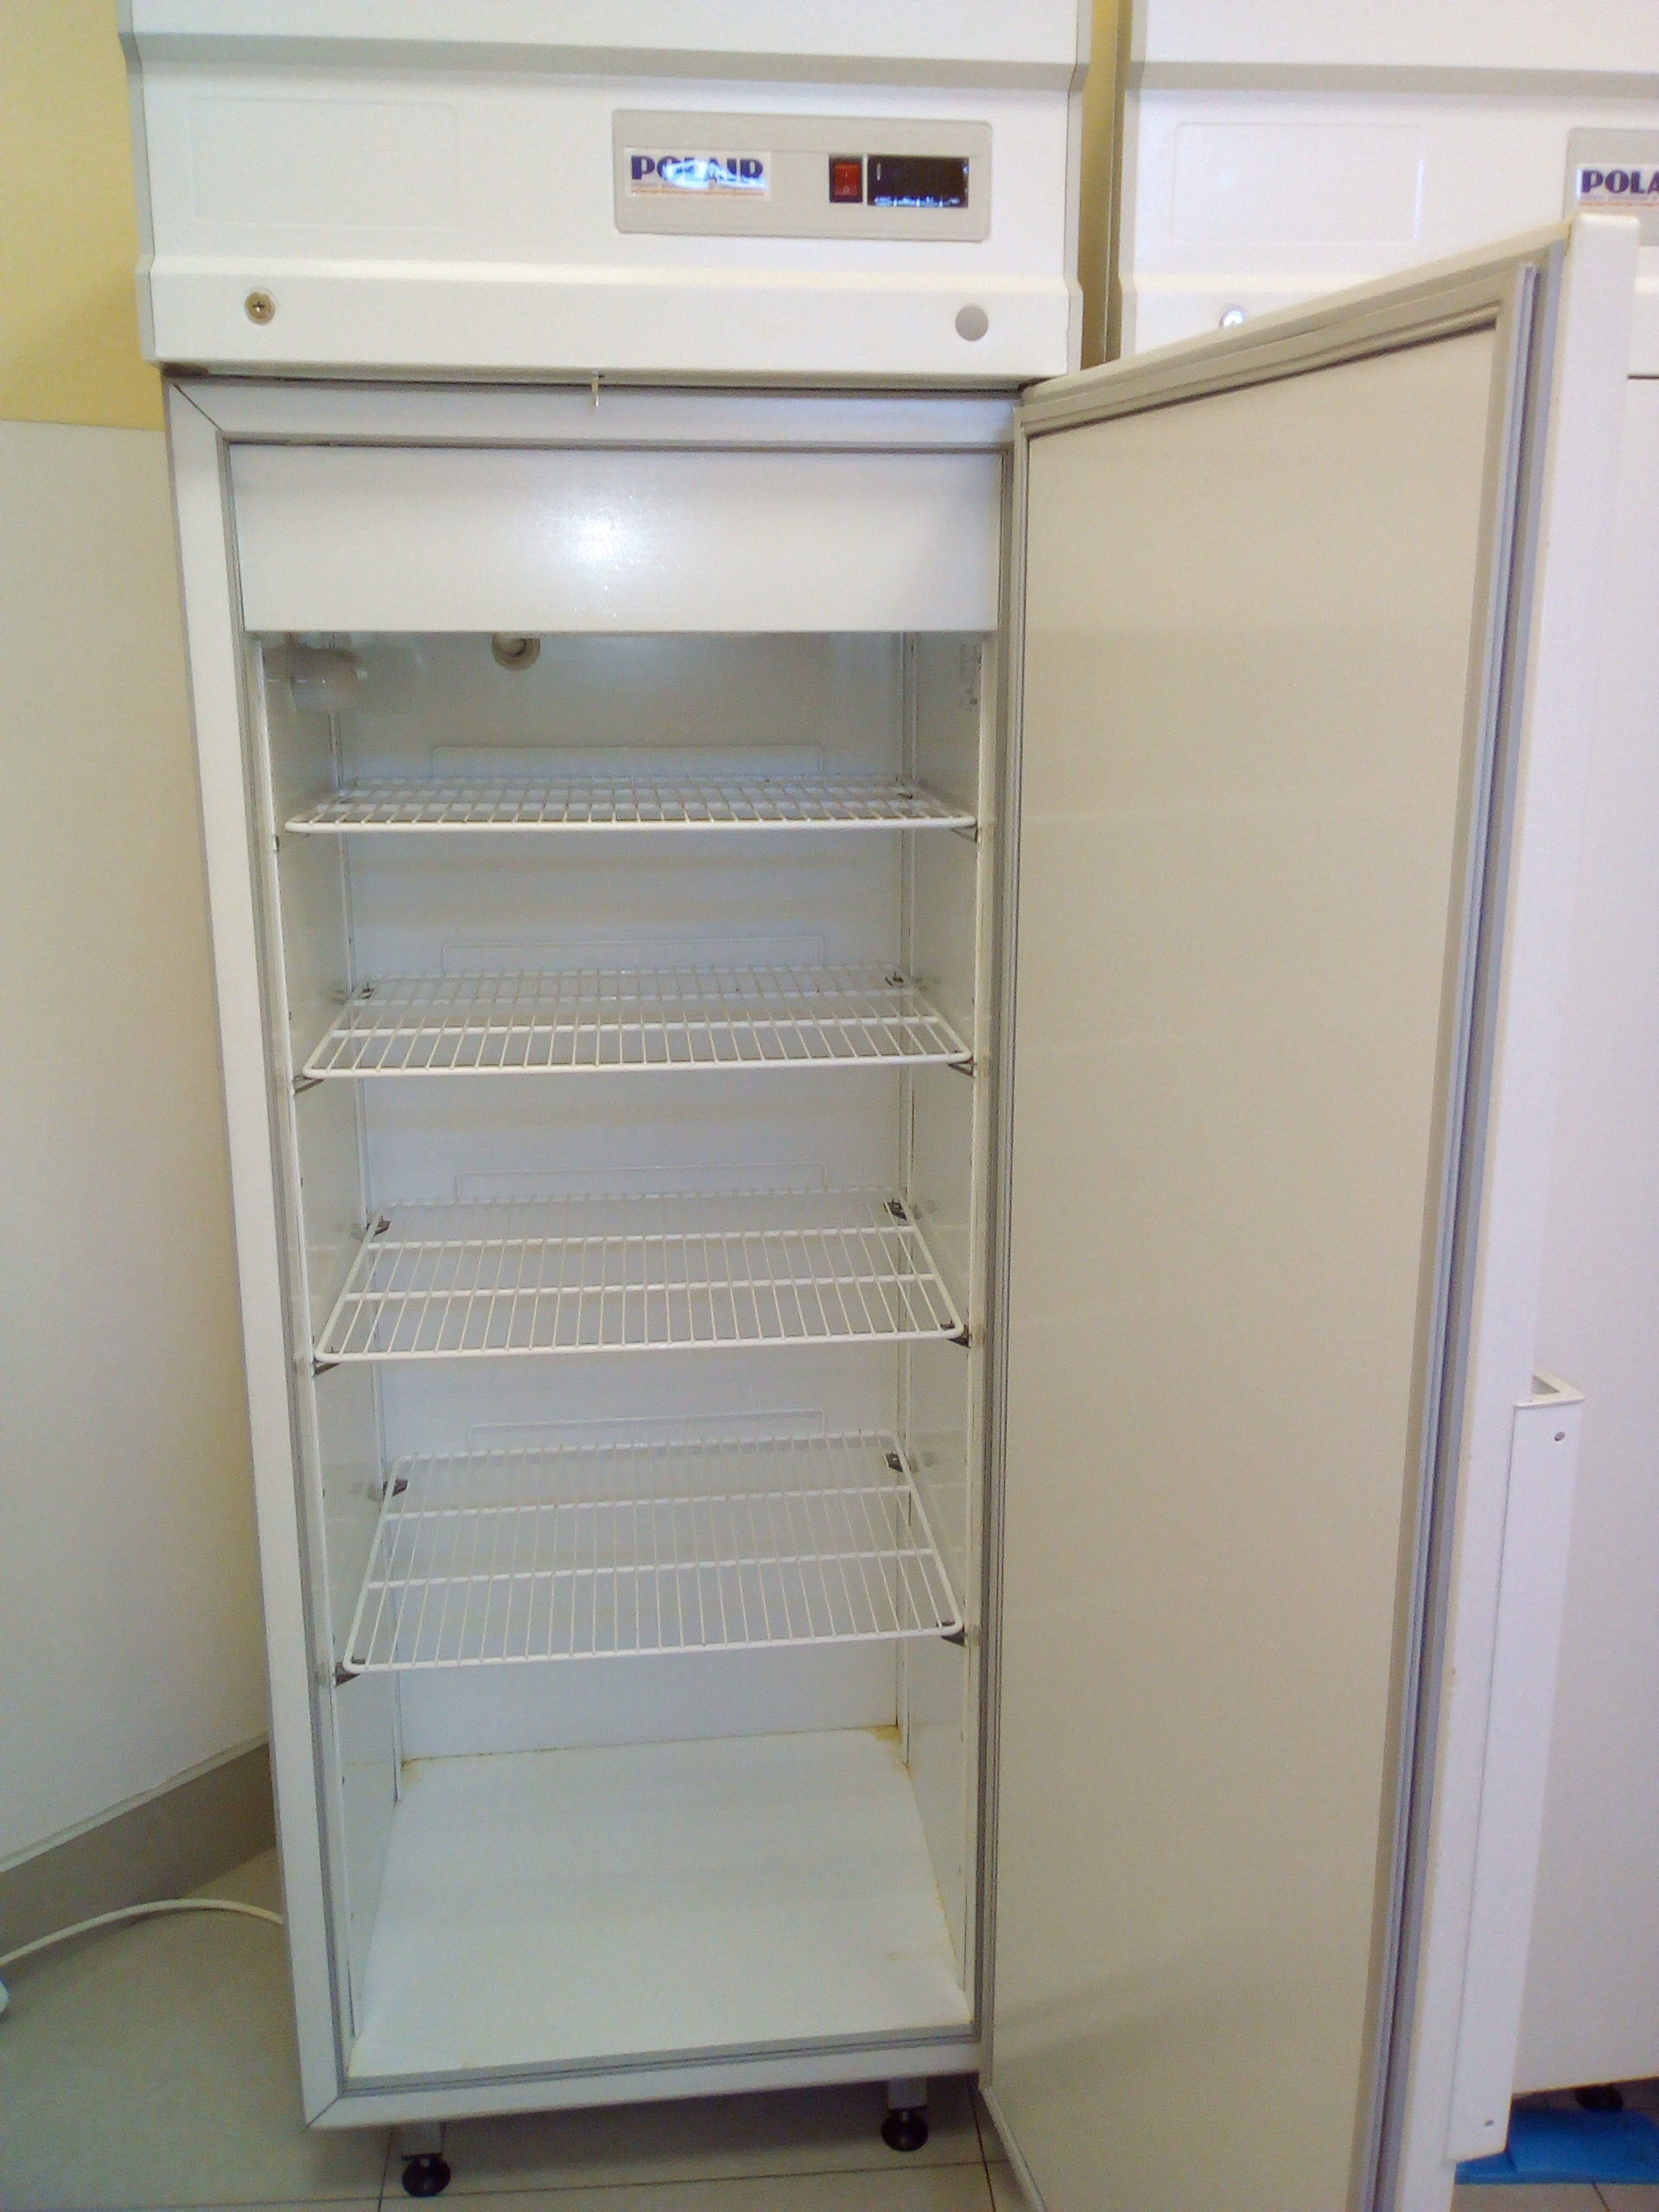 шкаф холодильный низкотемпературный cb105 s шн 0 5